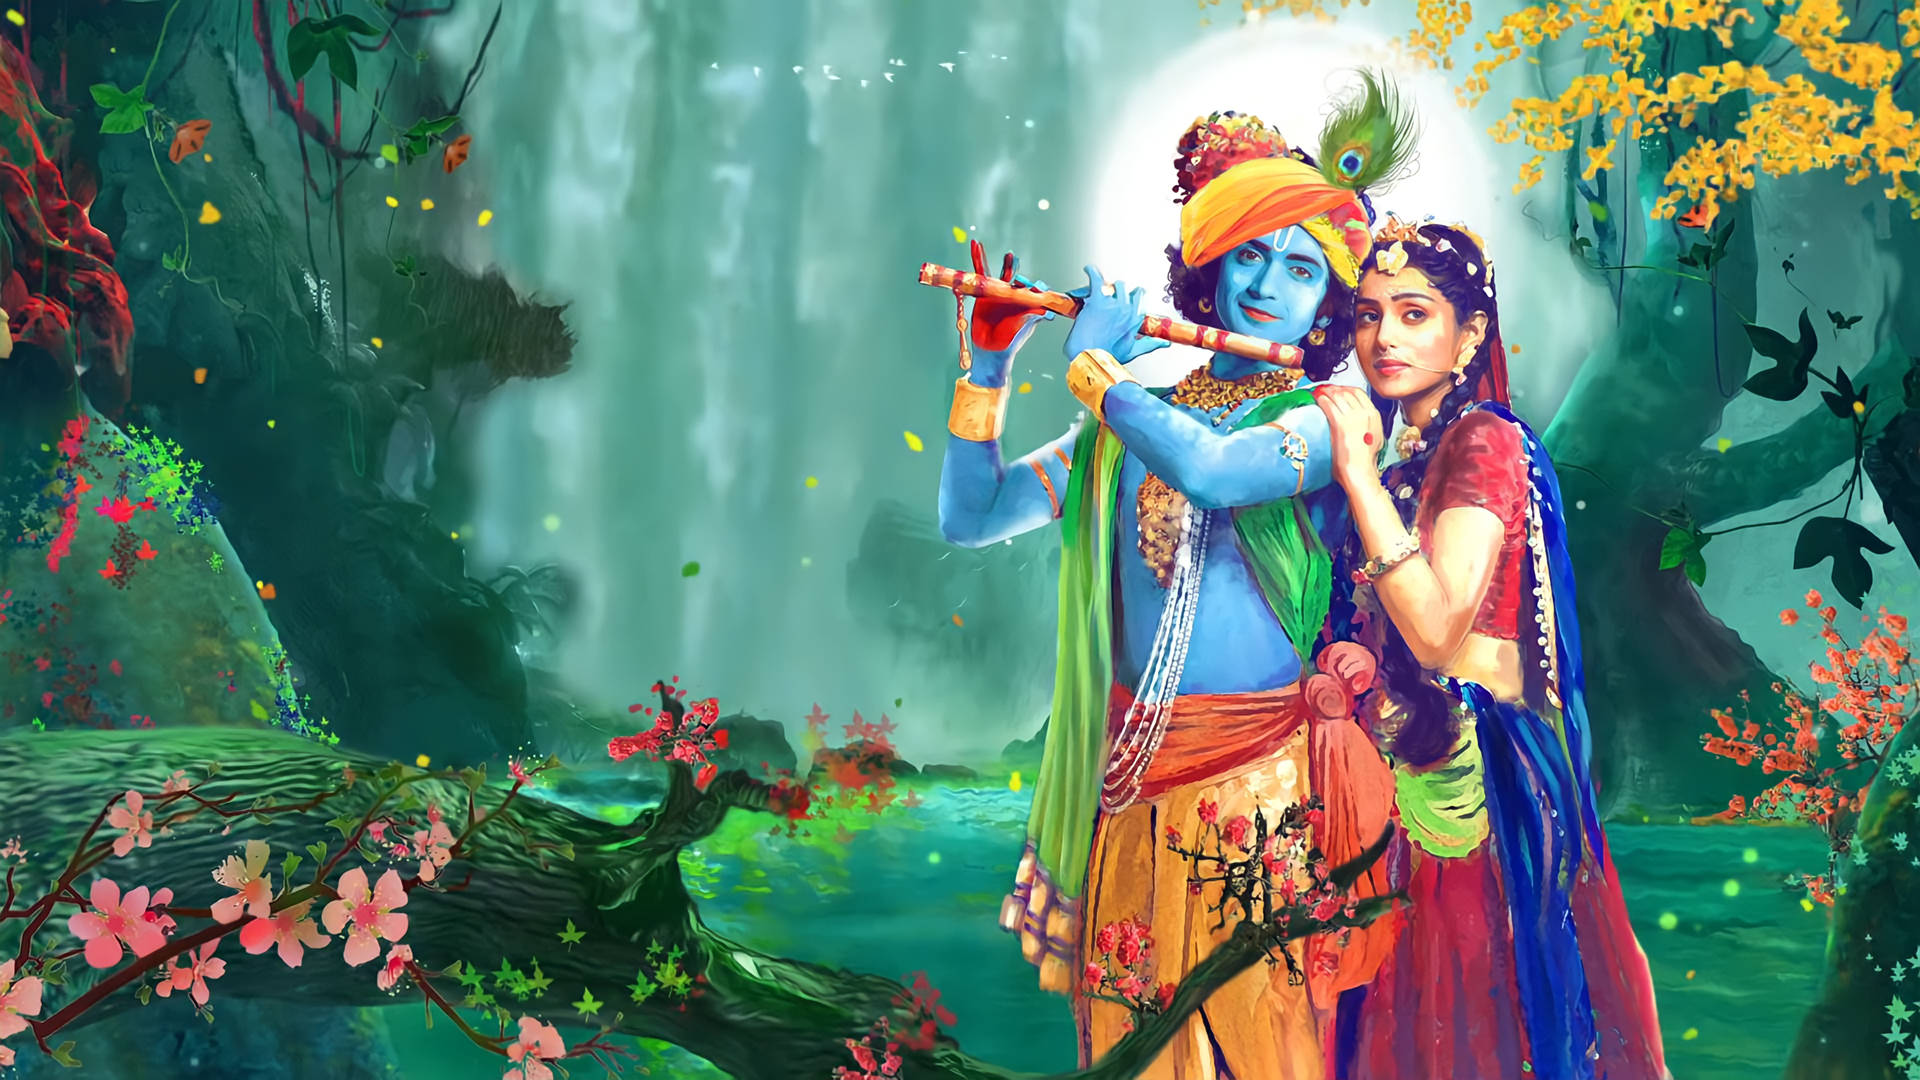 Free Radha Krishna Wallpaper Downloads, [200+] Radha Krishna Wallpapers for  FREE 